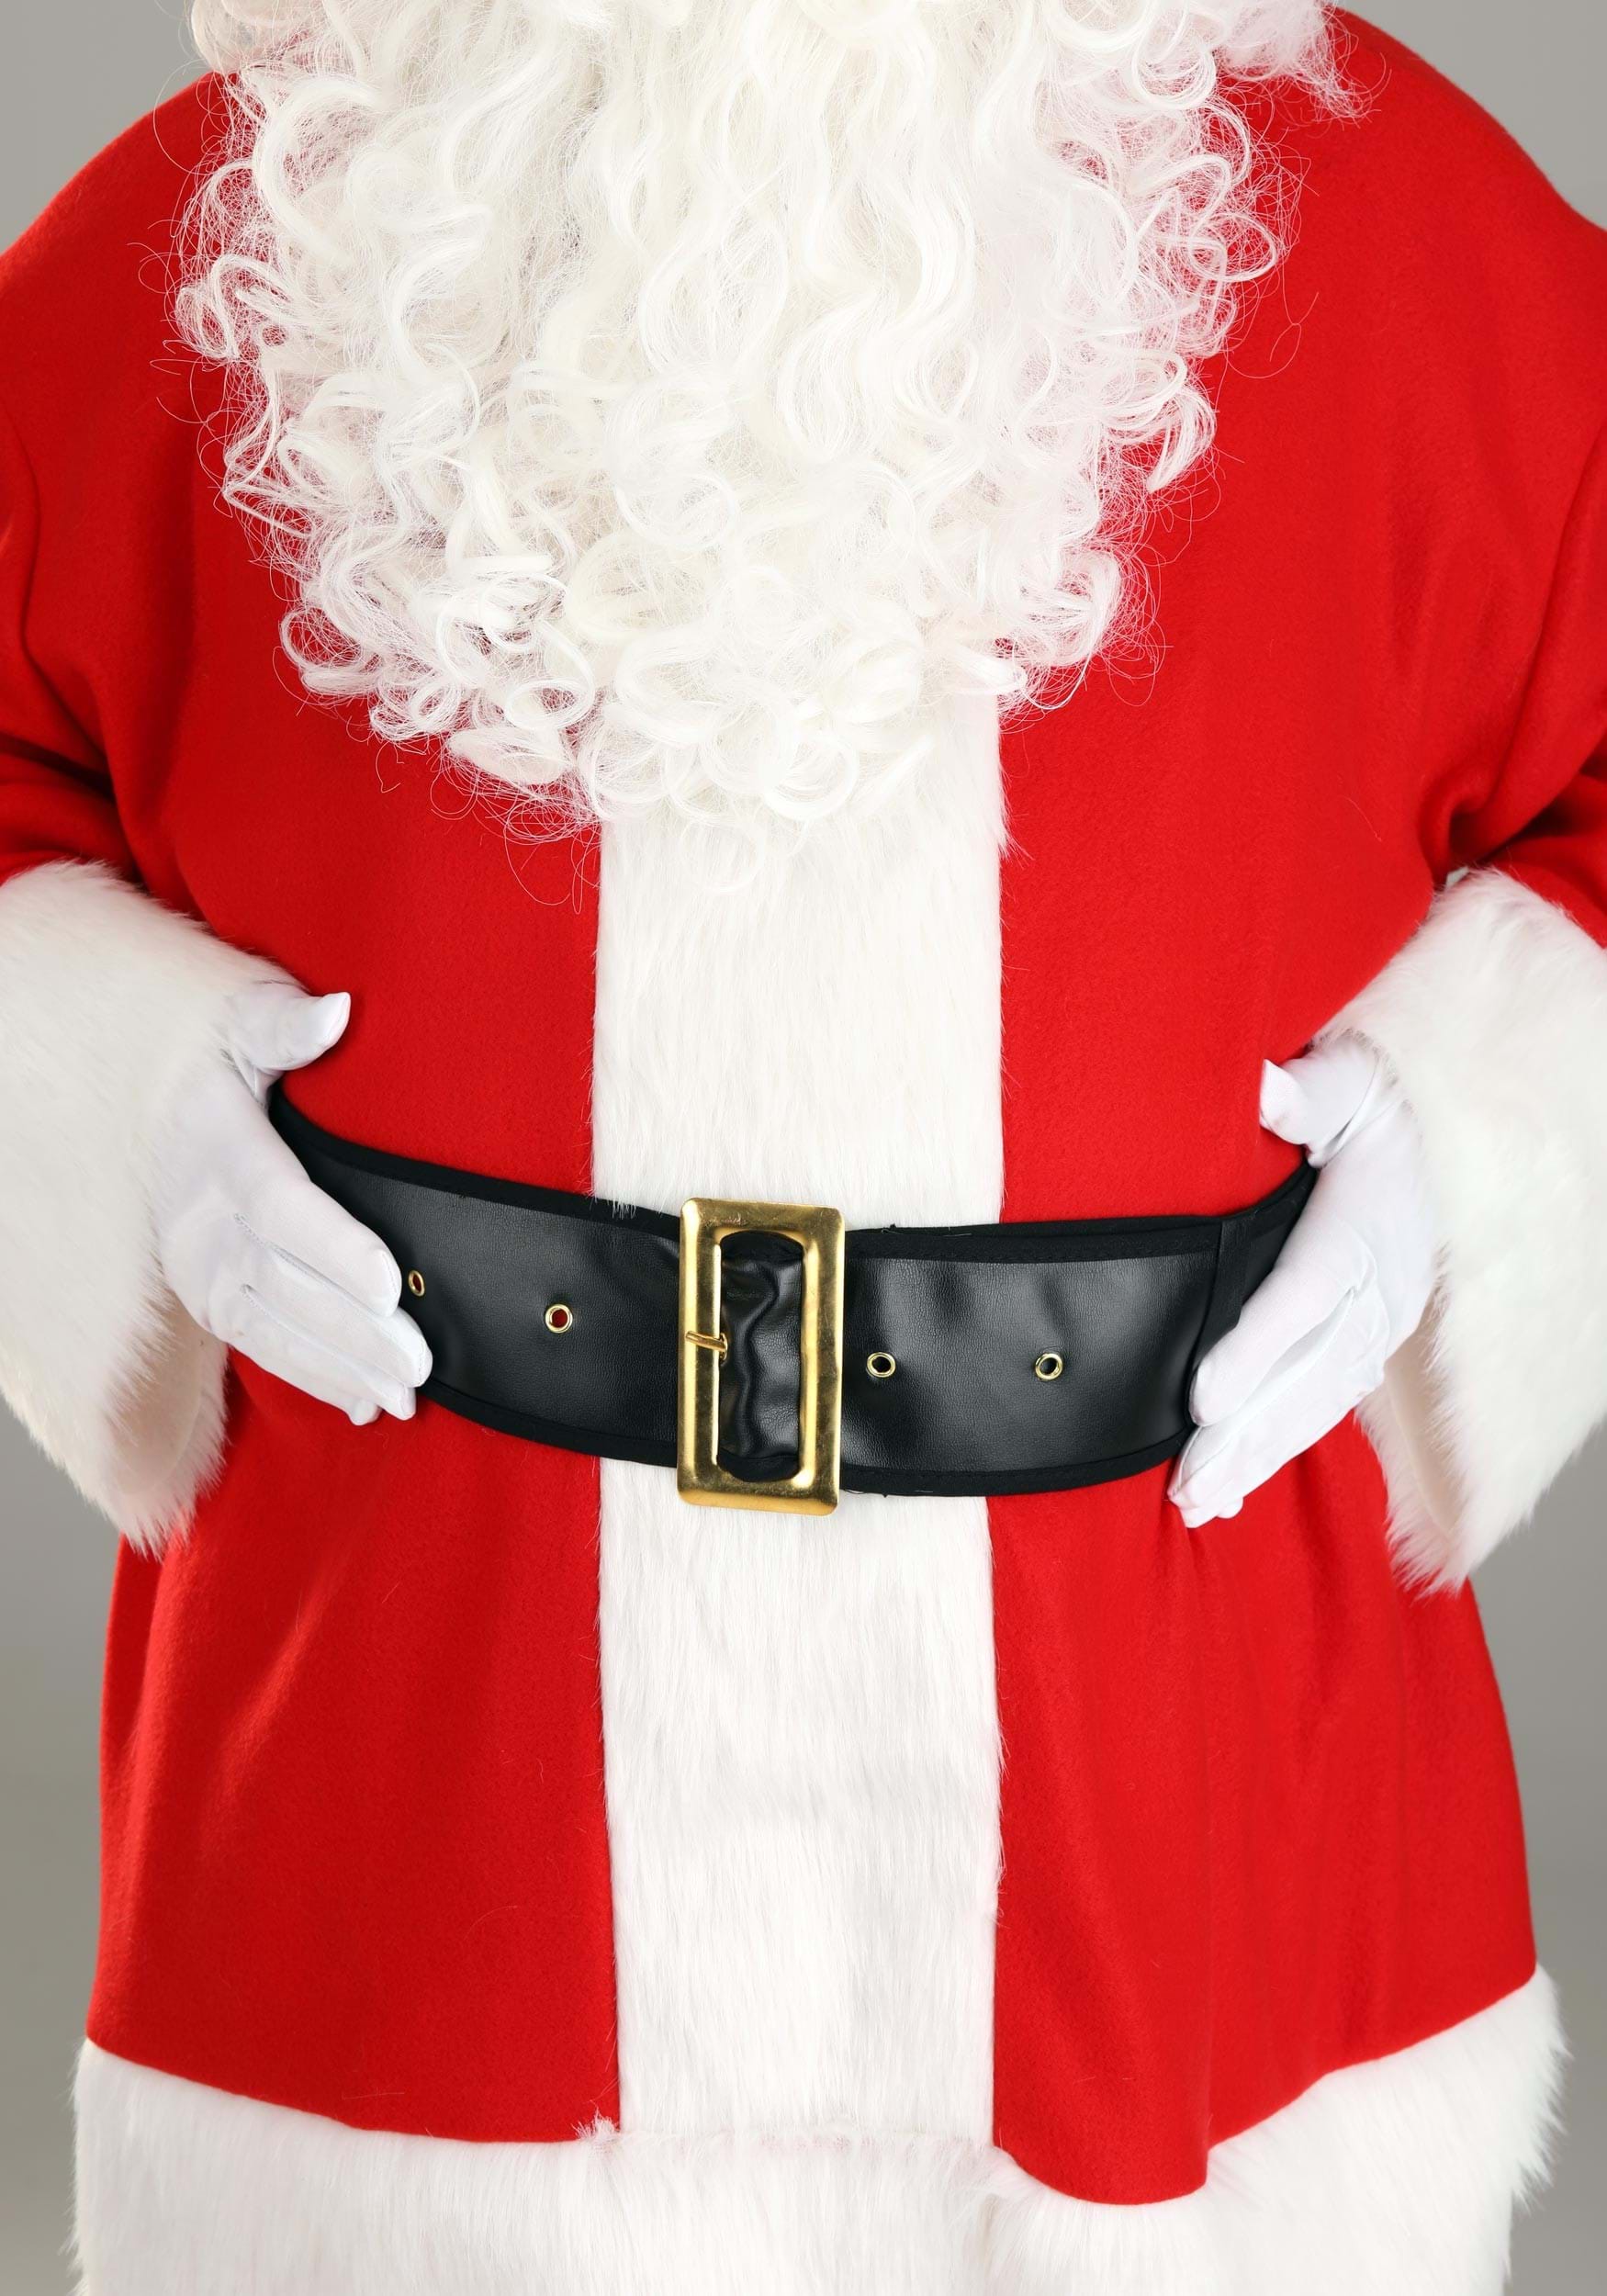 Plus Size Men's Holiday Santa Claus Fancy Dress Costume